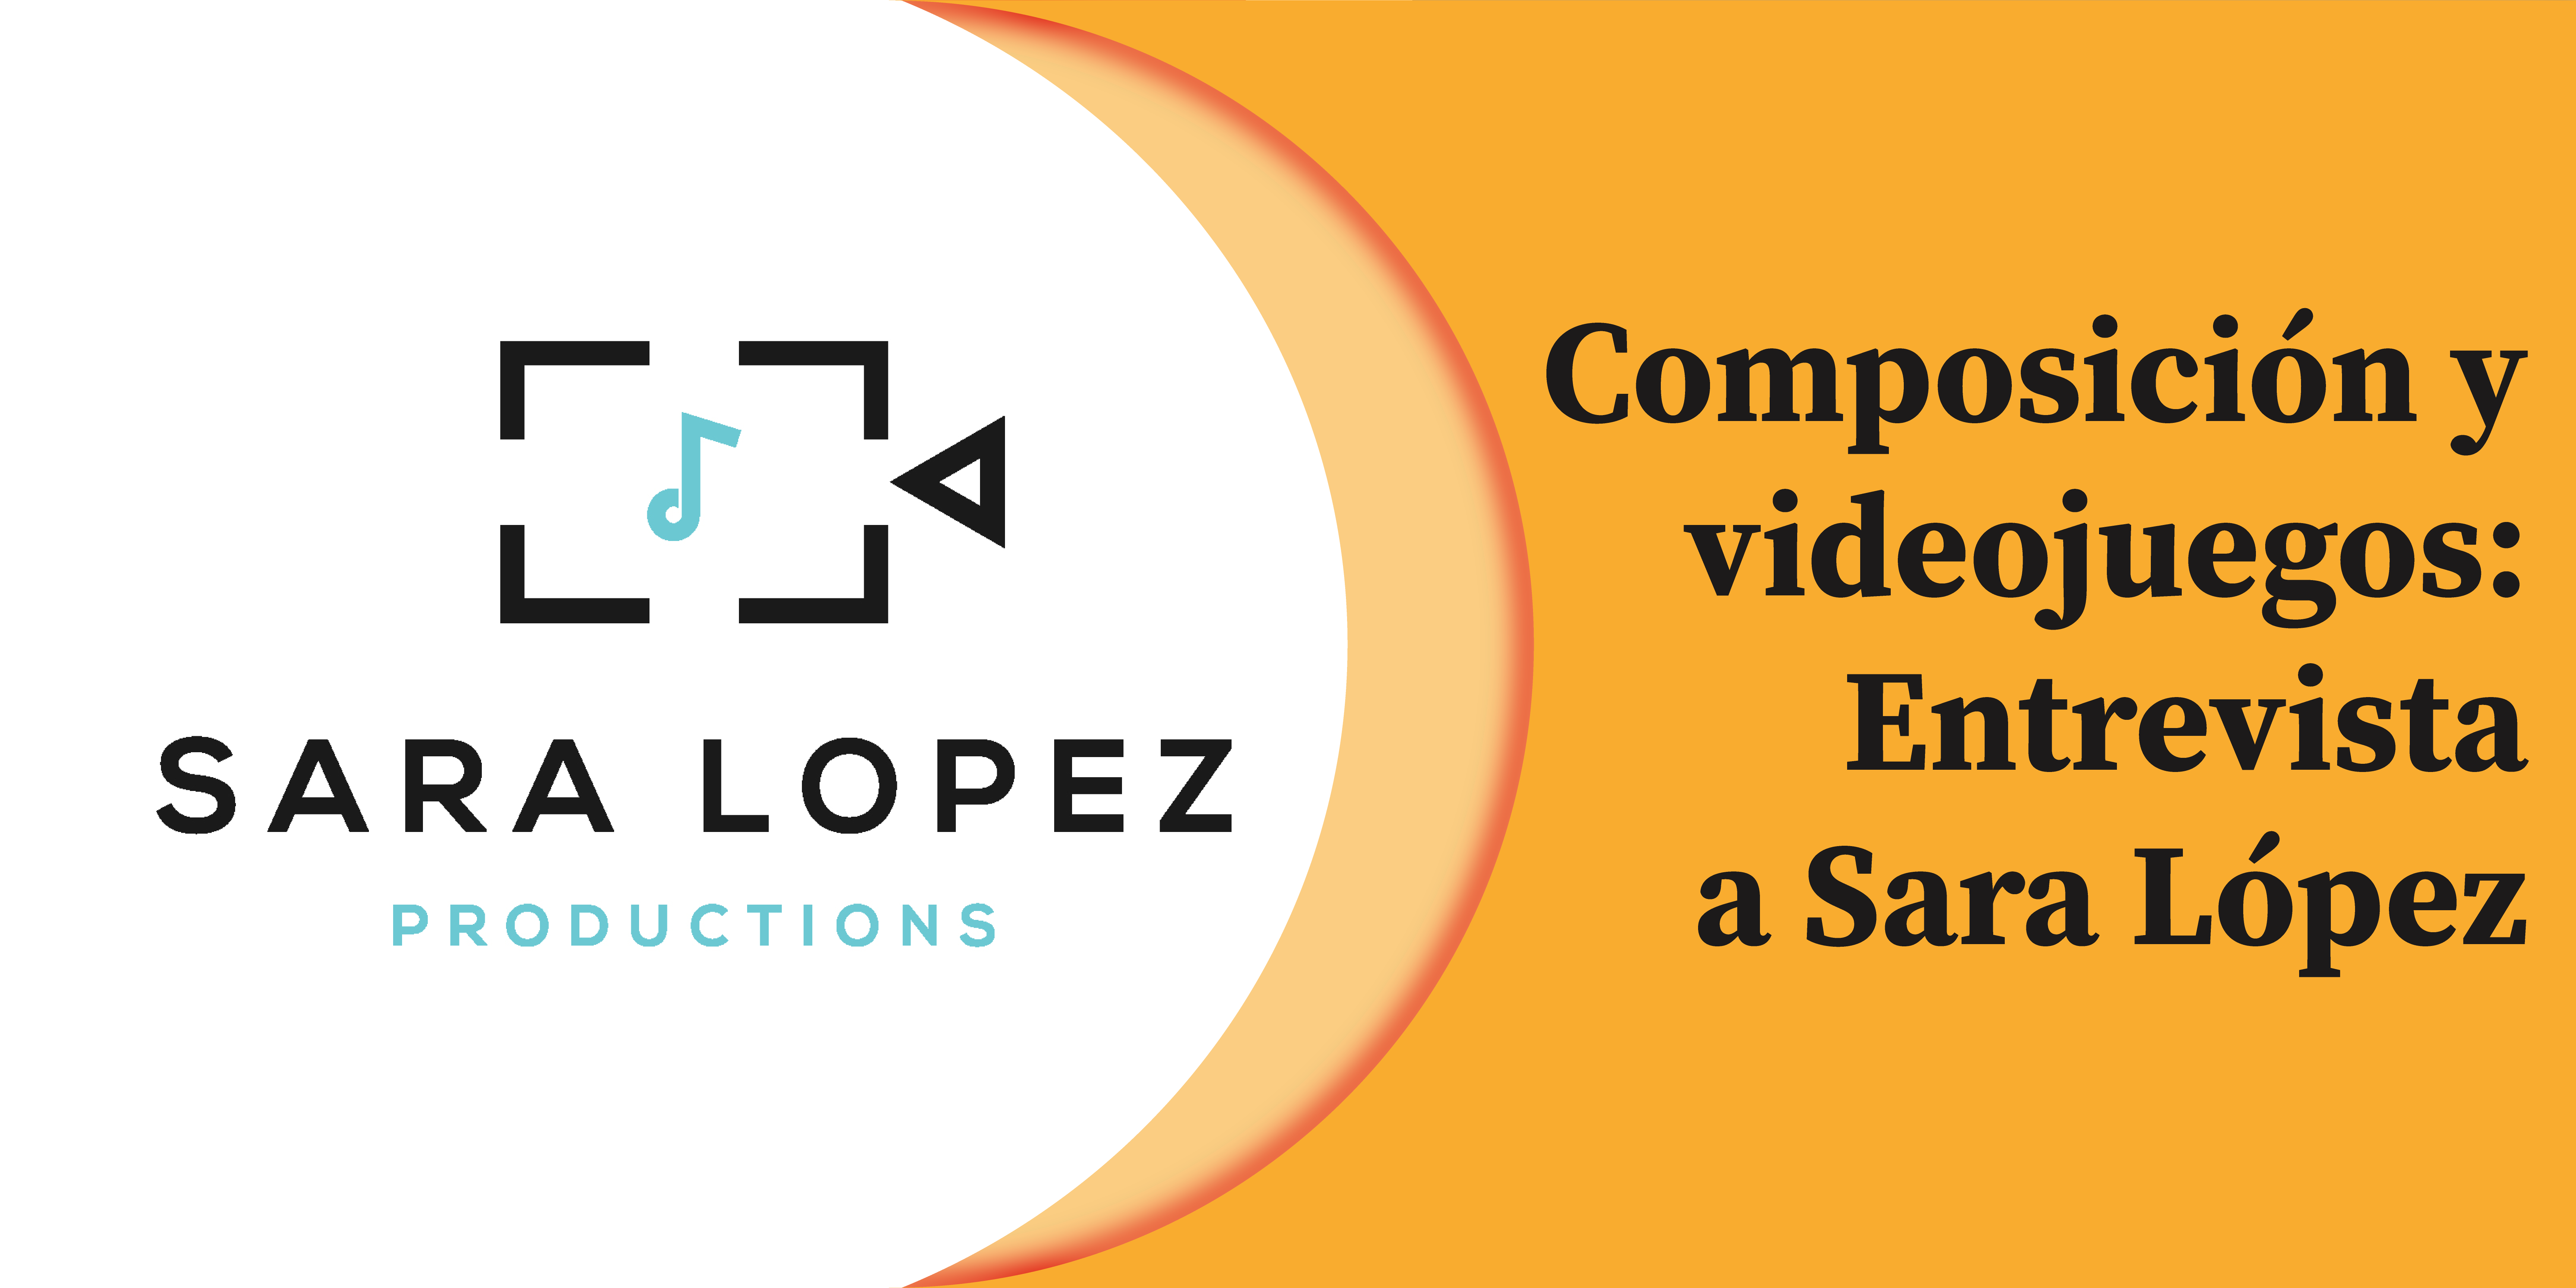 Composición y videojuegos: Entrevista a Sara López